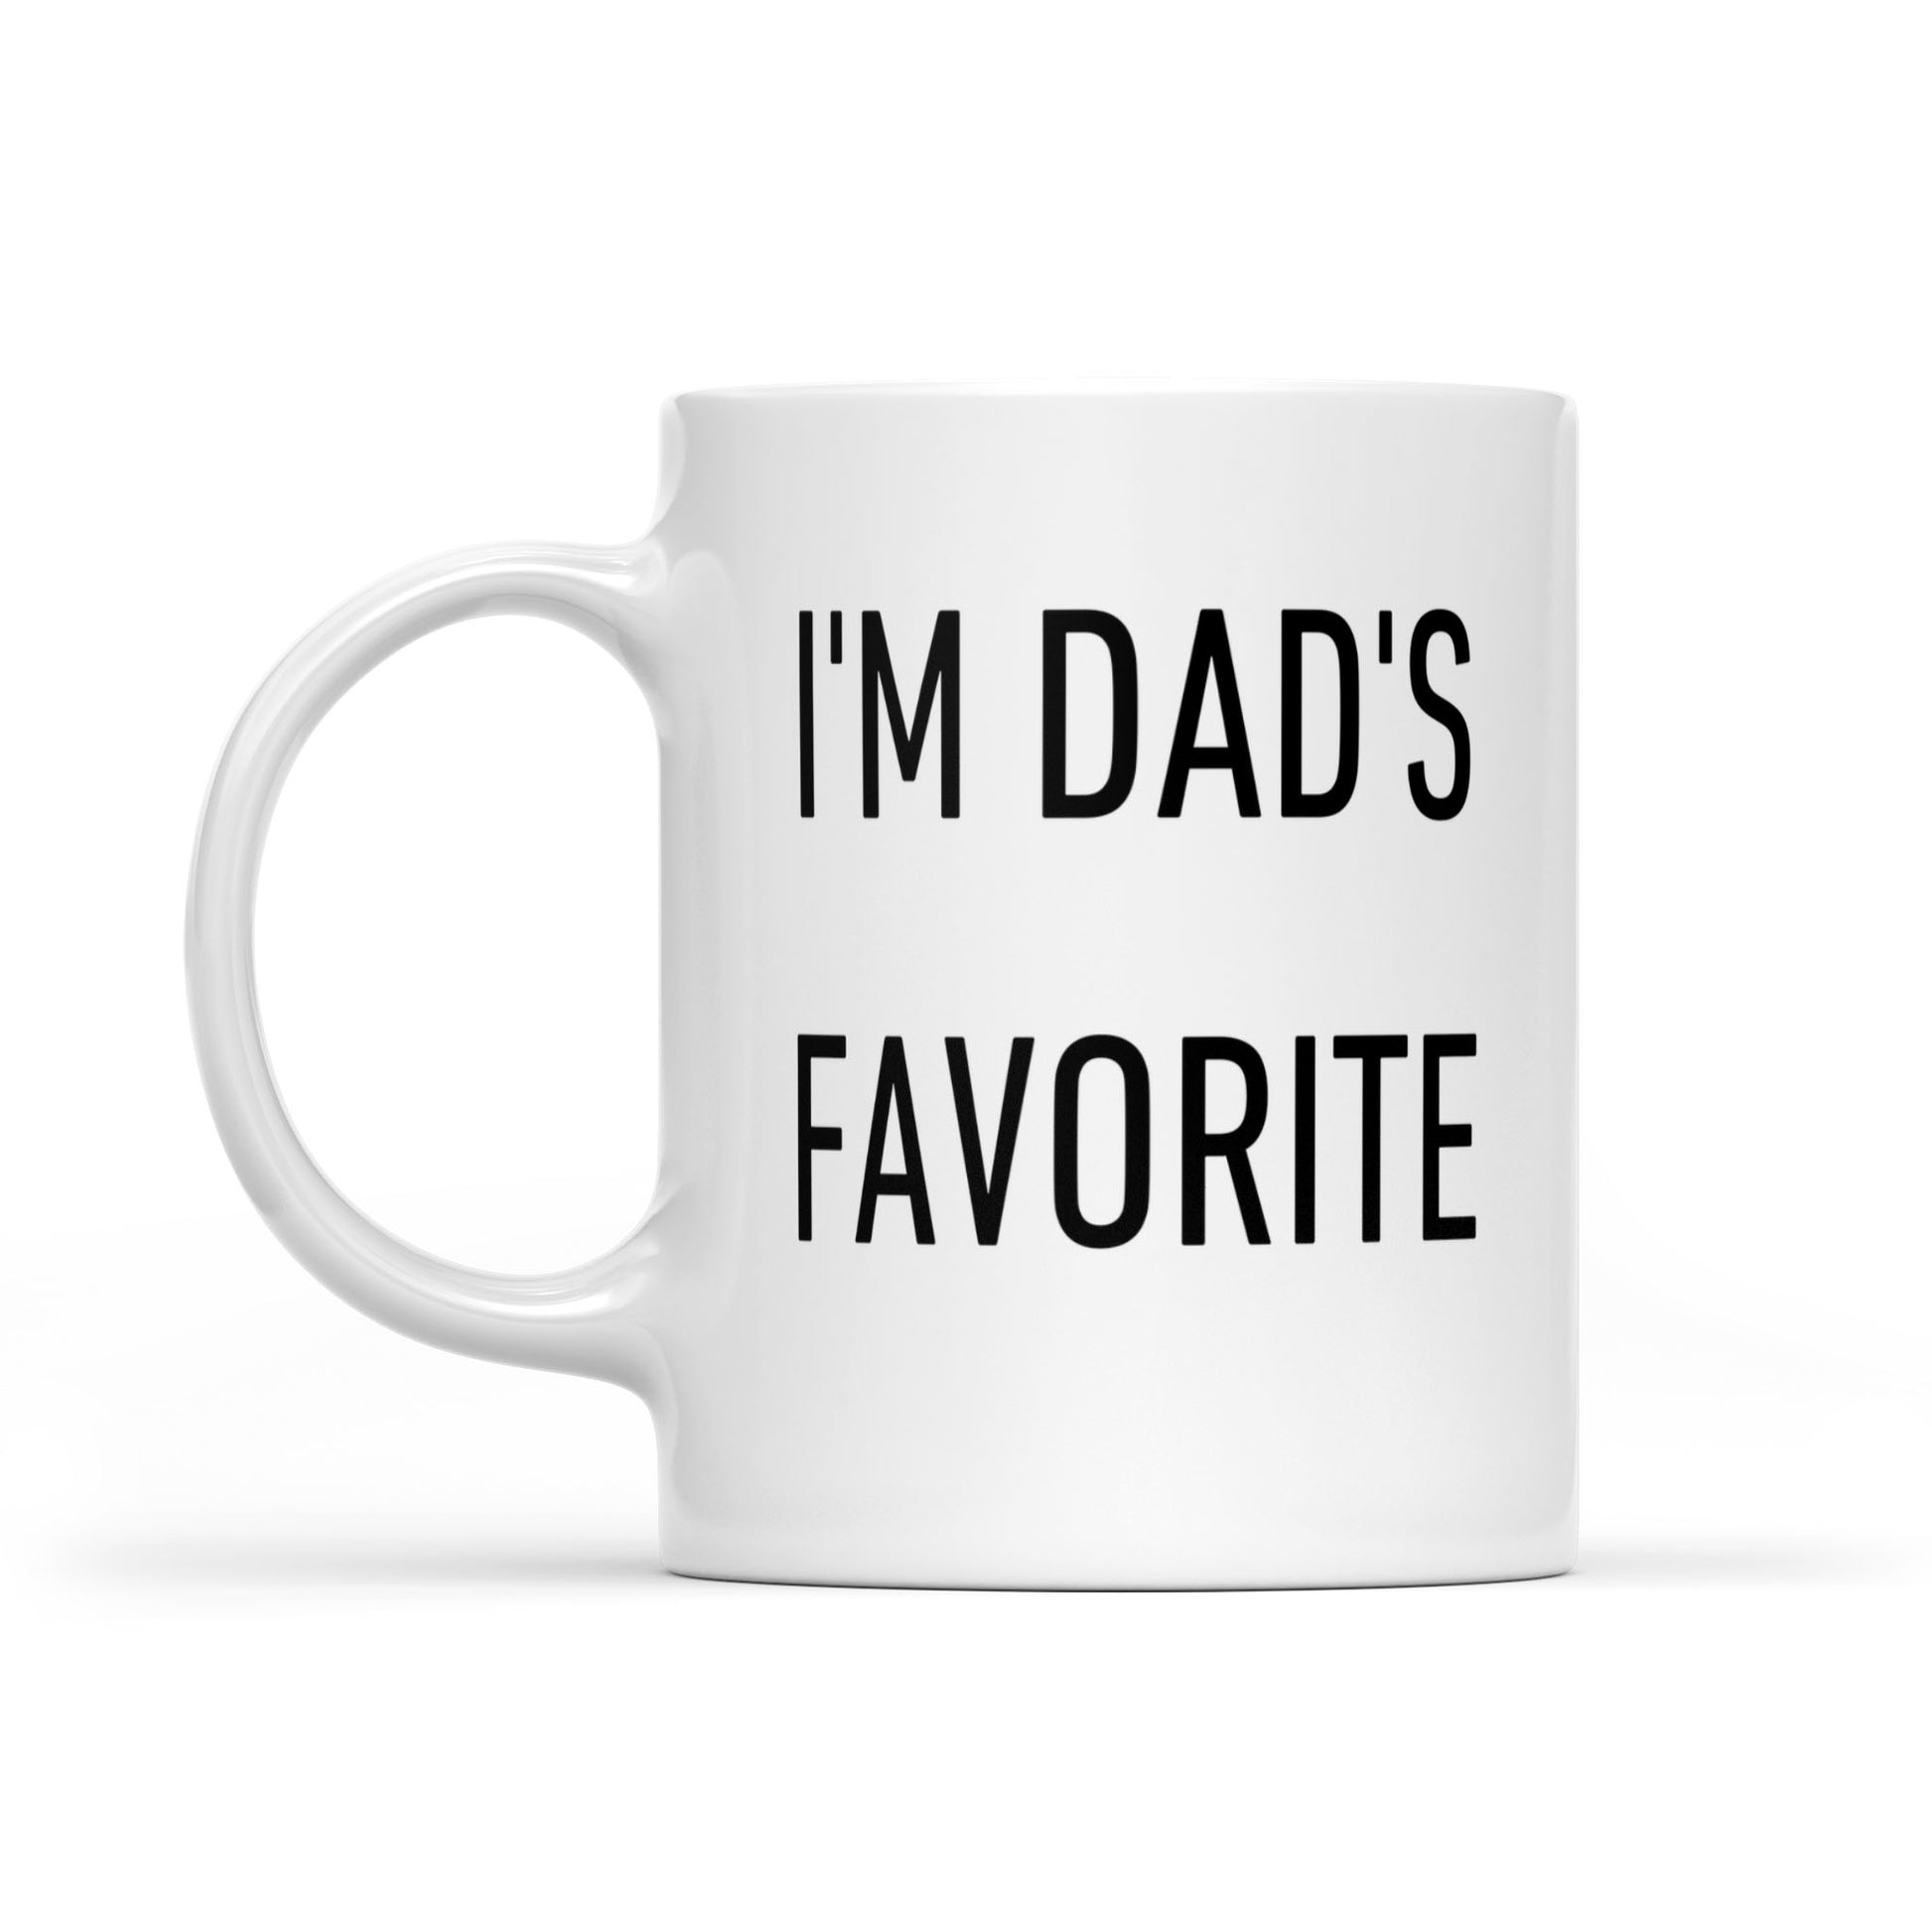 I'm Dad's Favorite - Mug for Her